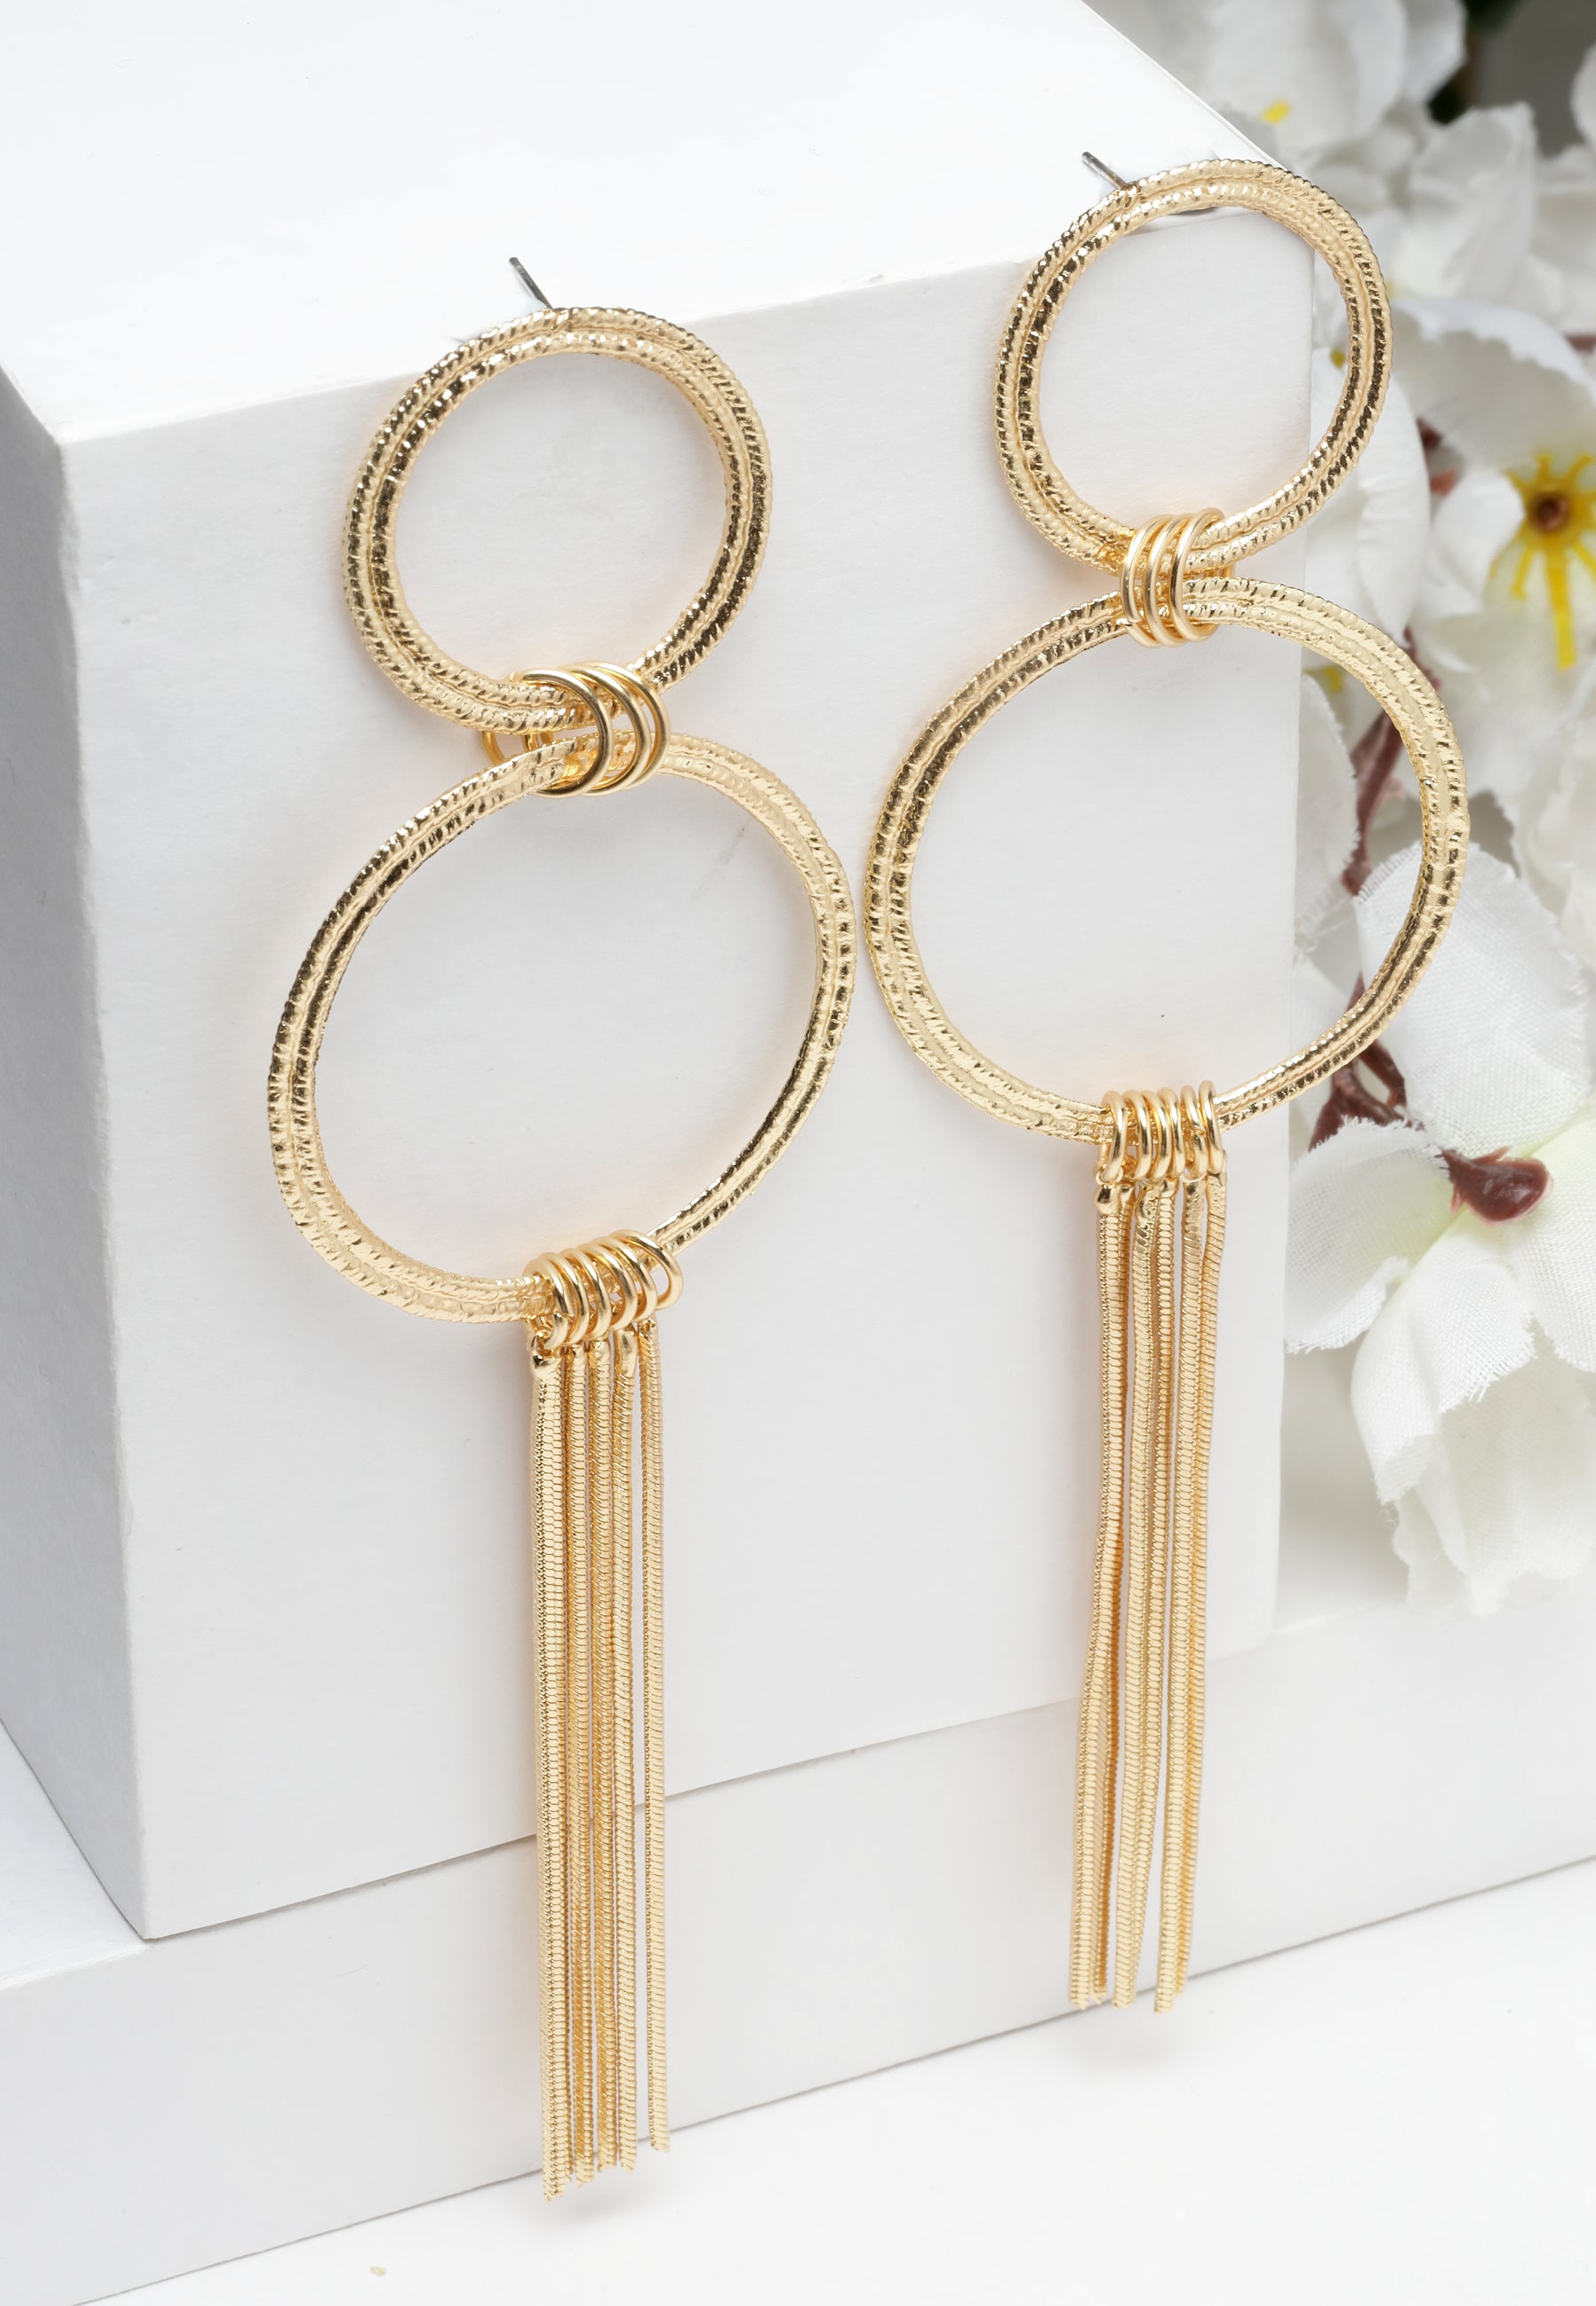 Eleganti orecchini con frange circolari in oro